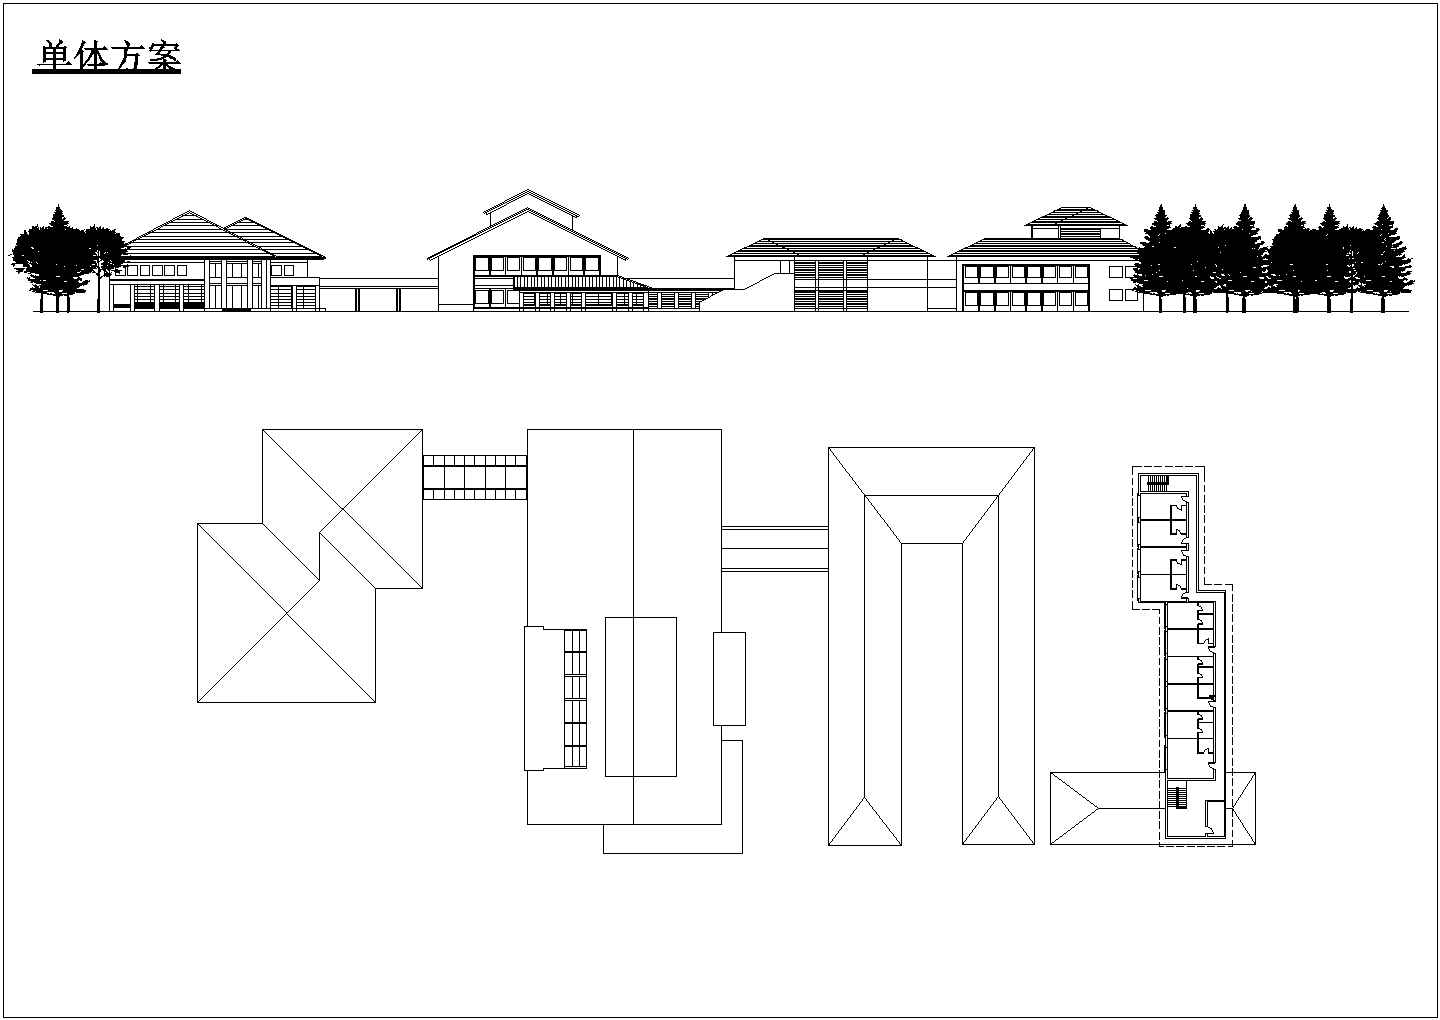 慈溪市某休闲度假村2200平米3层民宿酒店建筑设计CAD图纸